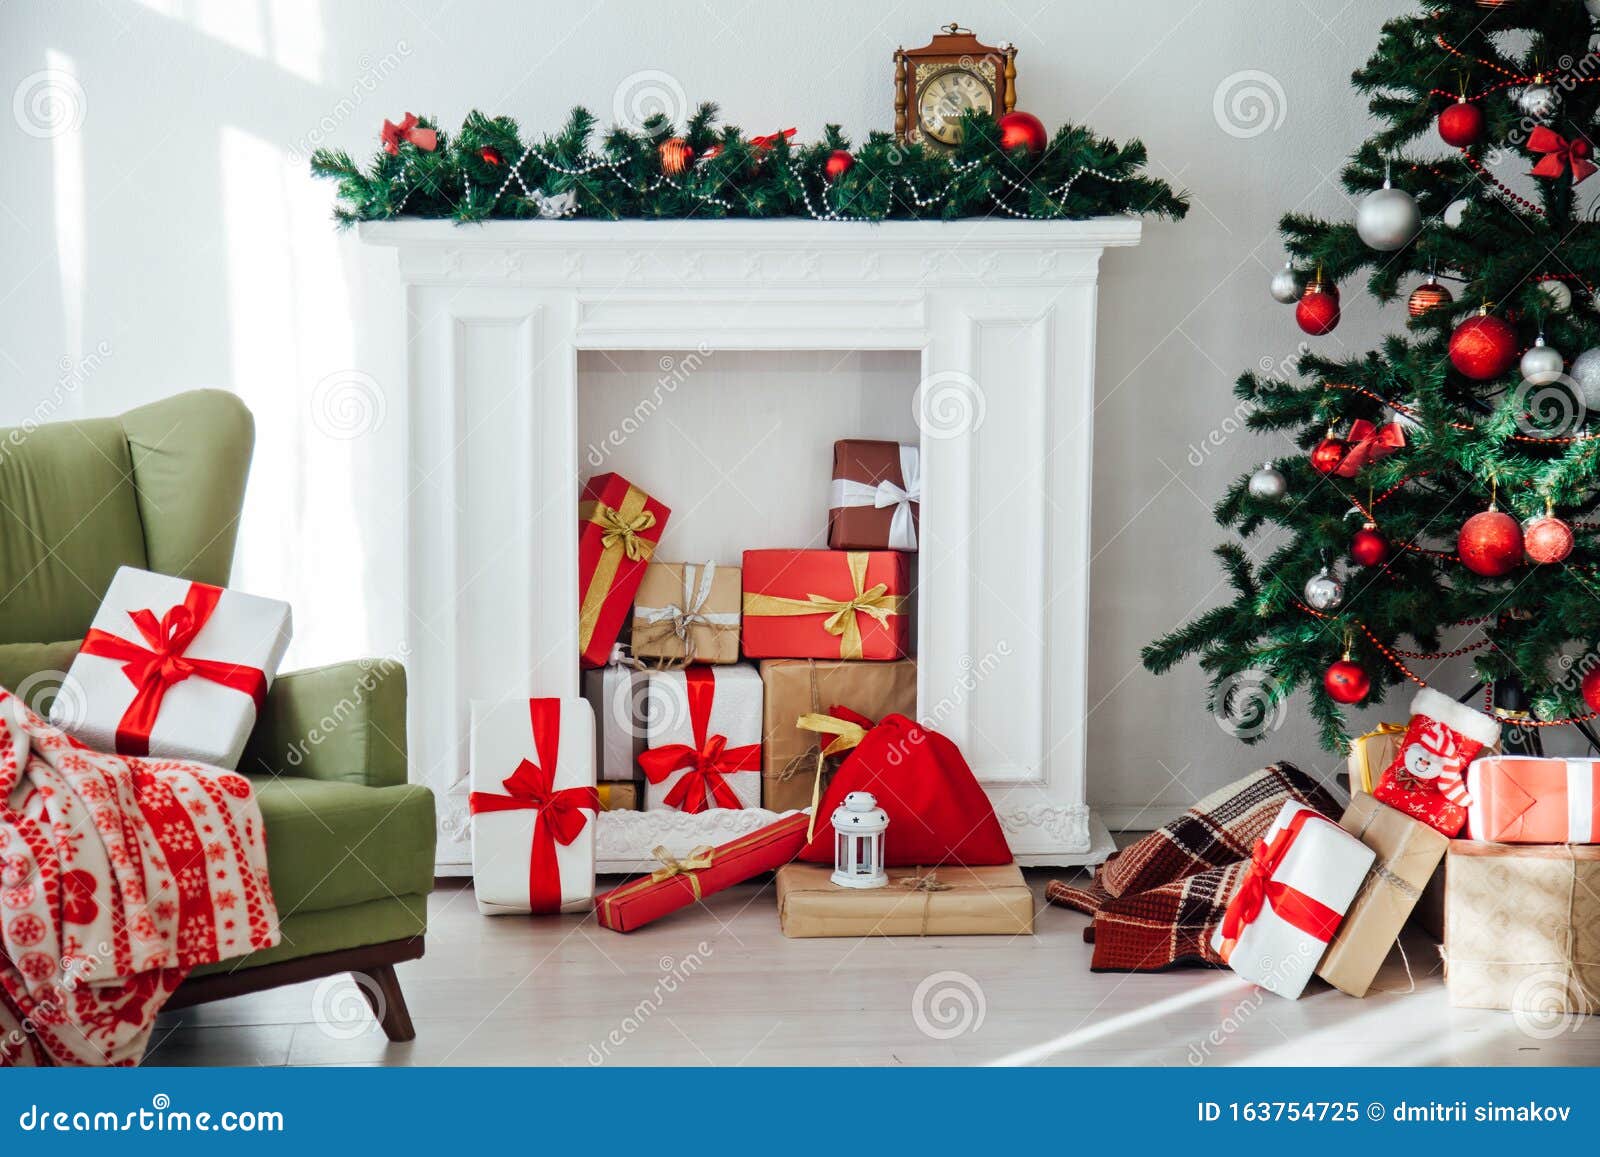 Những hình nền Giáng sinh đầy màu sắc sẽ khiến cho không gian nhà bạn thêm phần ấn tượng và sang trọng. Tự hào khoe tài sản mới của mình bằng những bức ảnh khoảng trống đẹp và quyến rũ. Hãy dành thời gian ngắm nhìn để lấy cảm hứng và đón một mùa Giáng sinh thật đáng nhớ trong ngôi nhà của bạn.